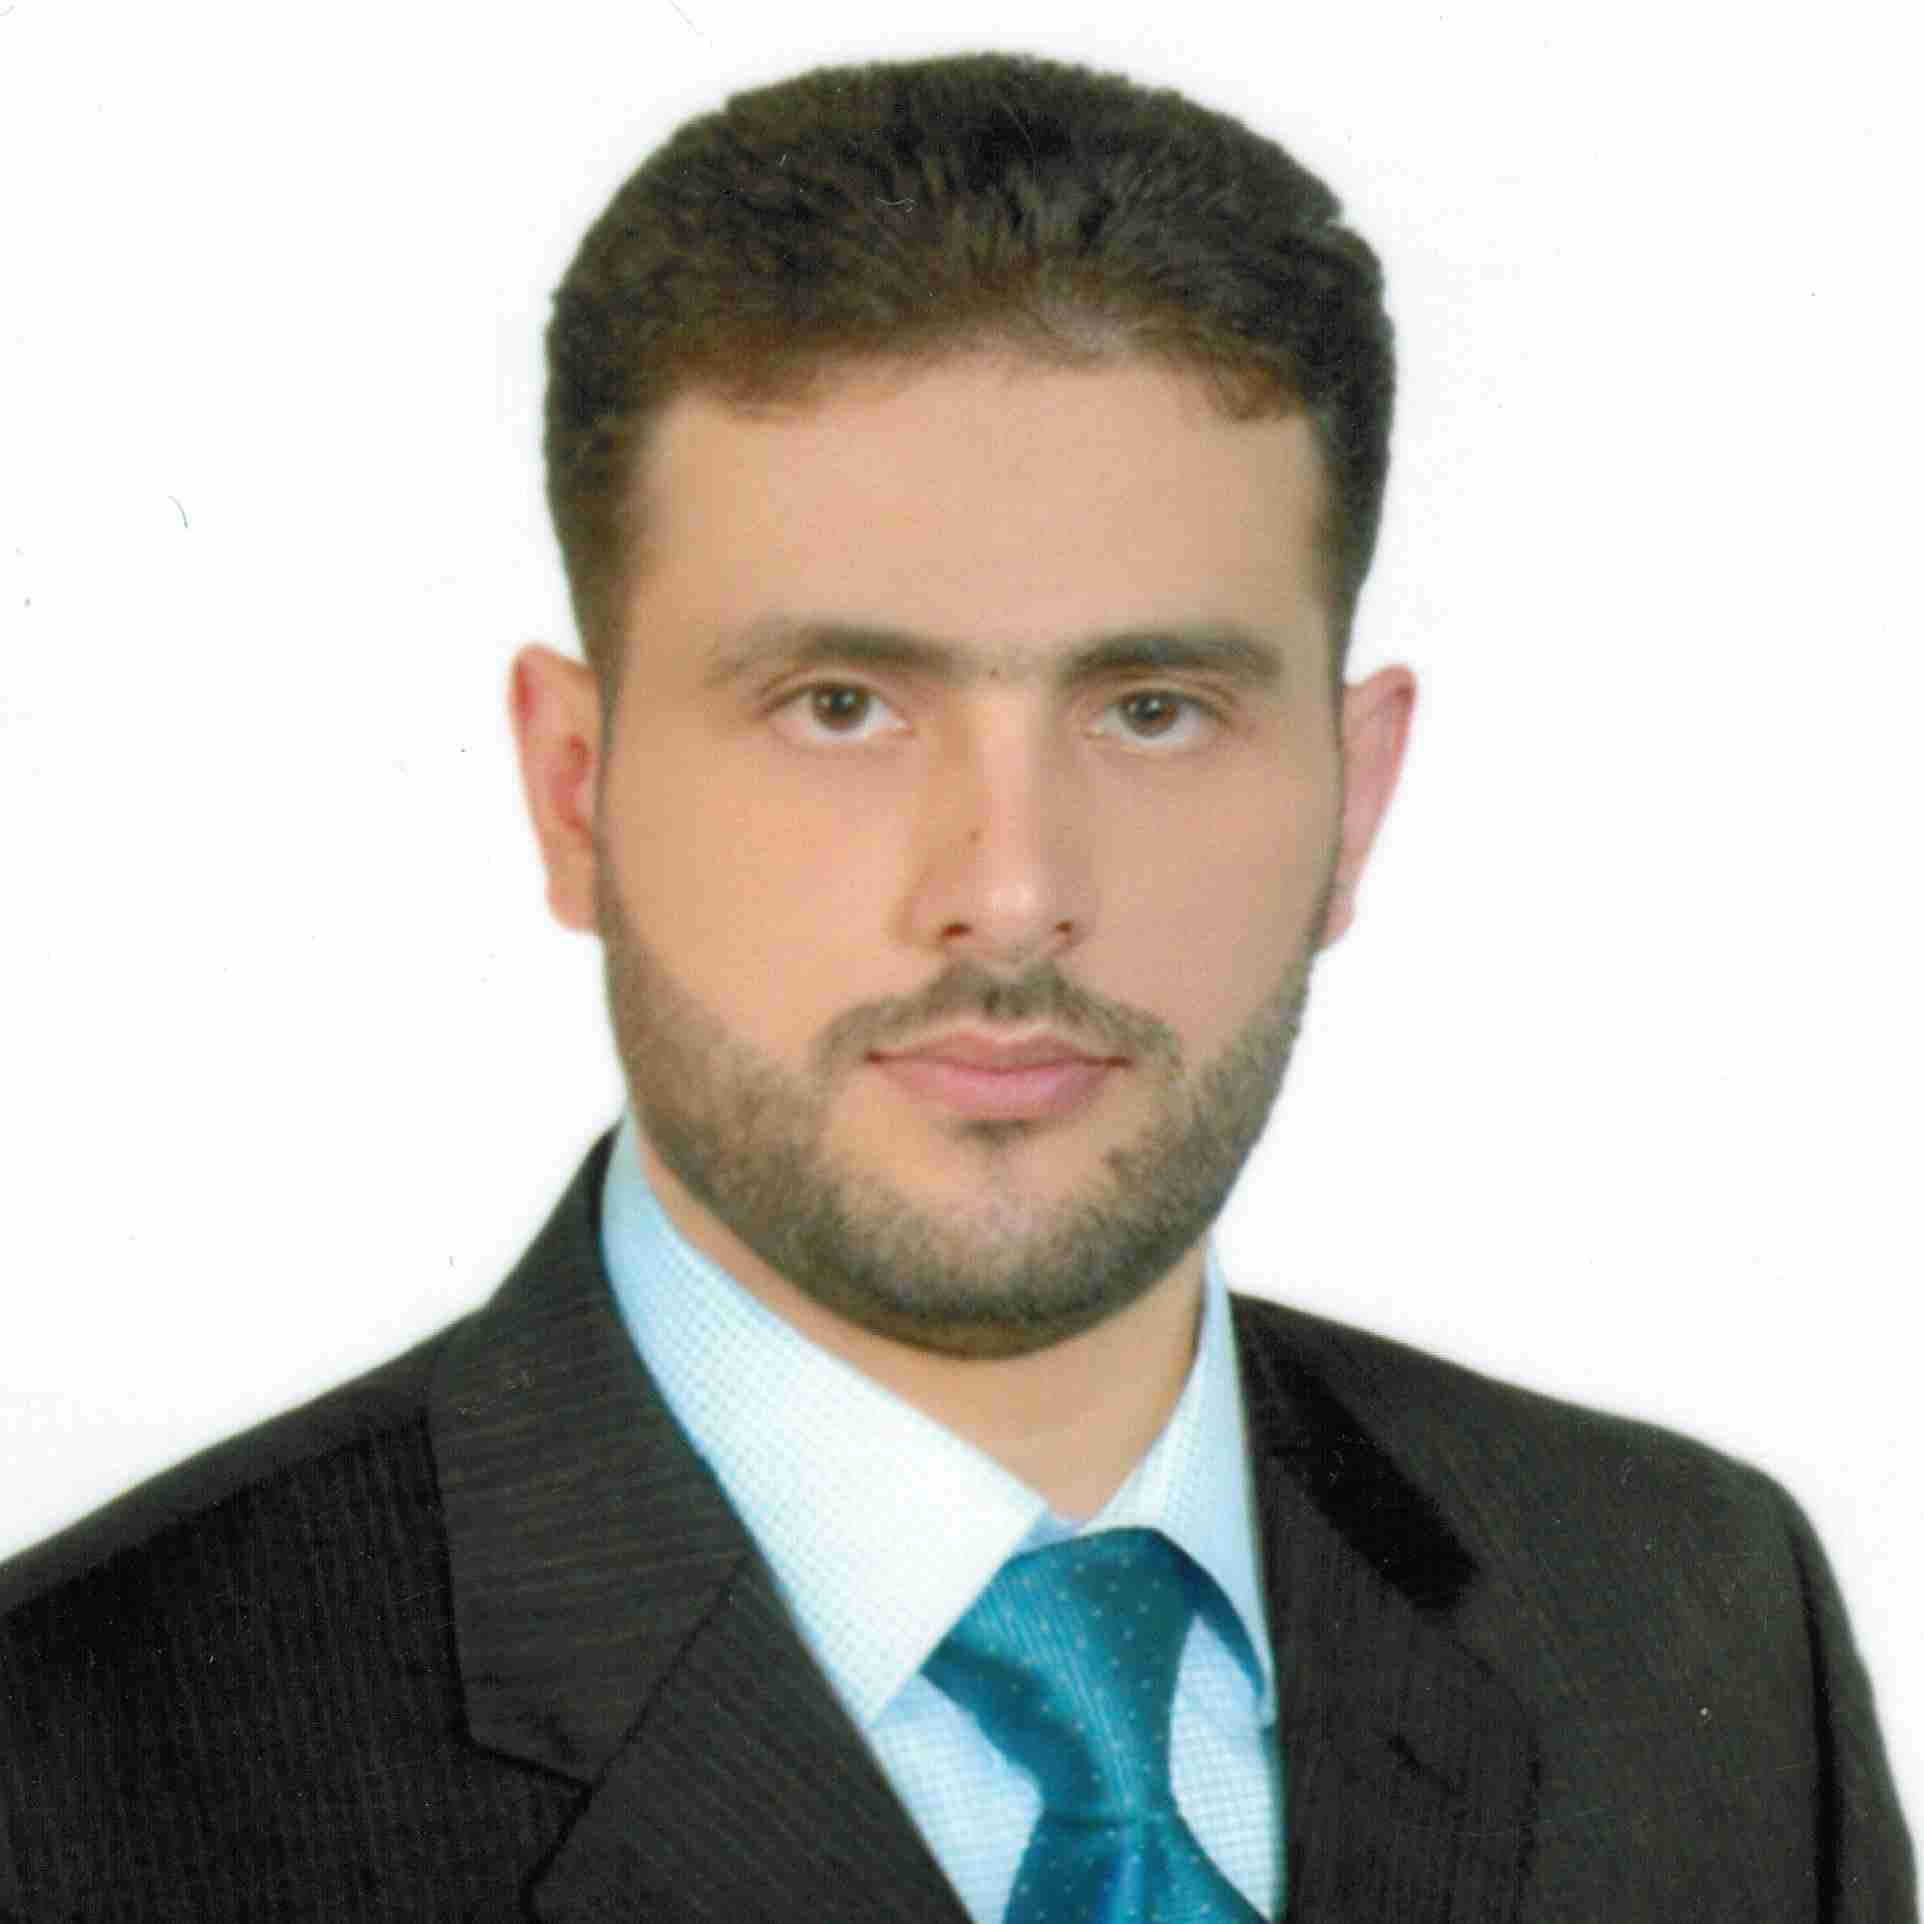 Profile image of Dr Muhammad Shadi Hajar